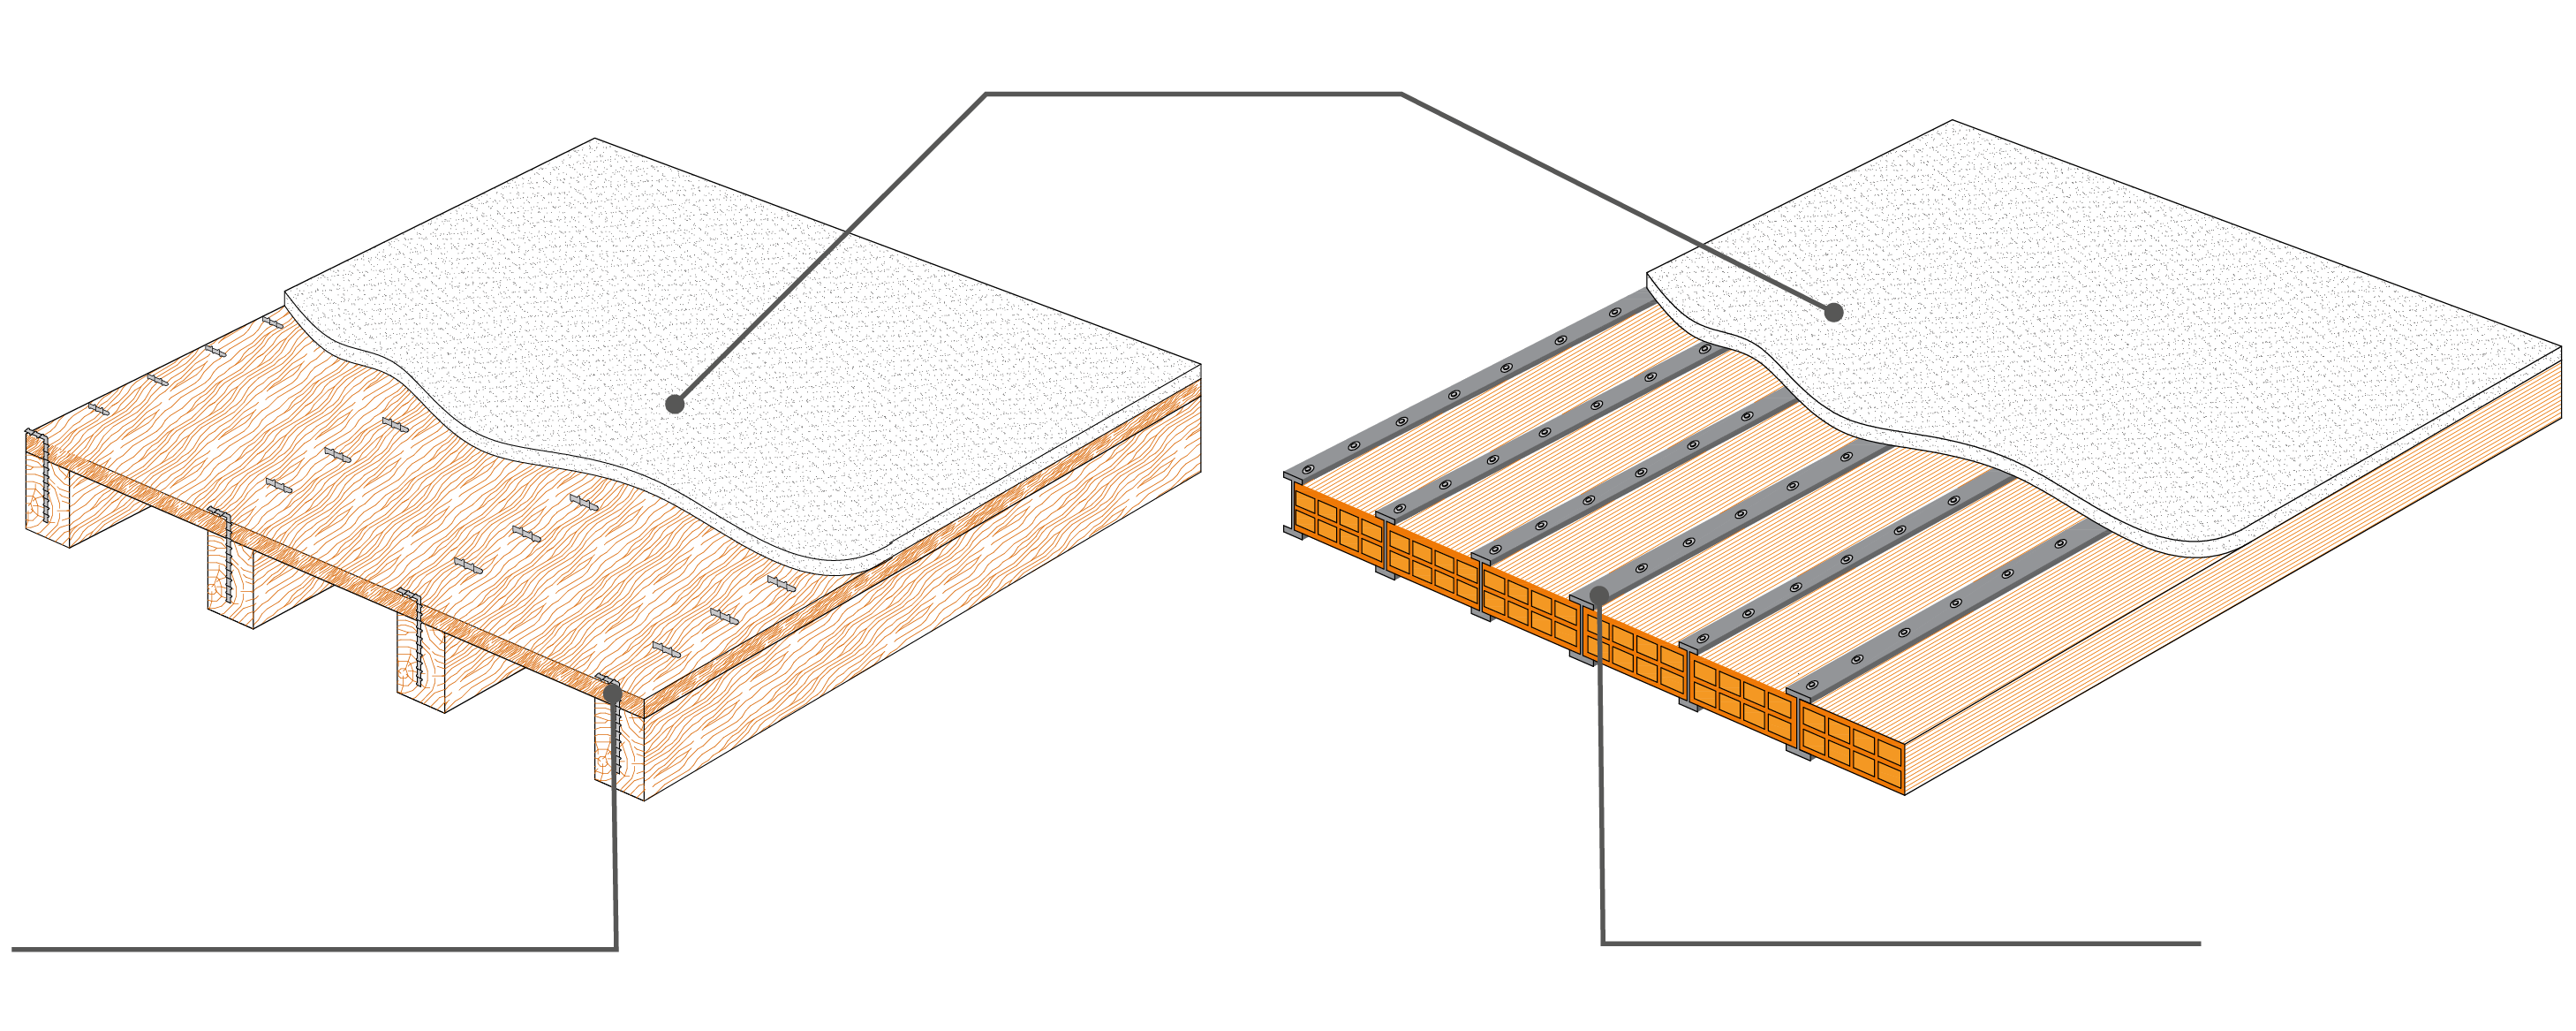 riprisitno-strutturale-solaio-acciaio-legno-microcalcesturzzo-ruregold-laterlite-hpfrc